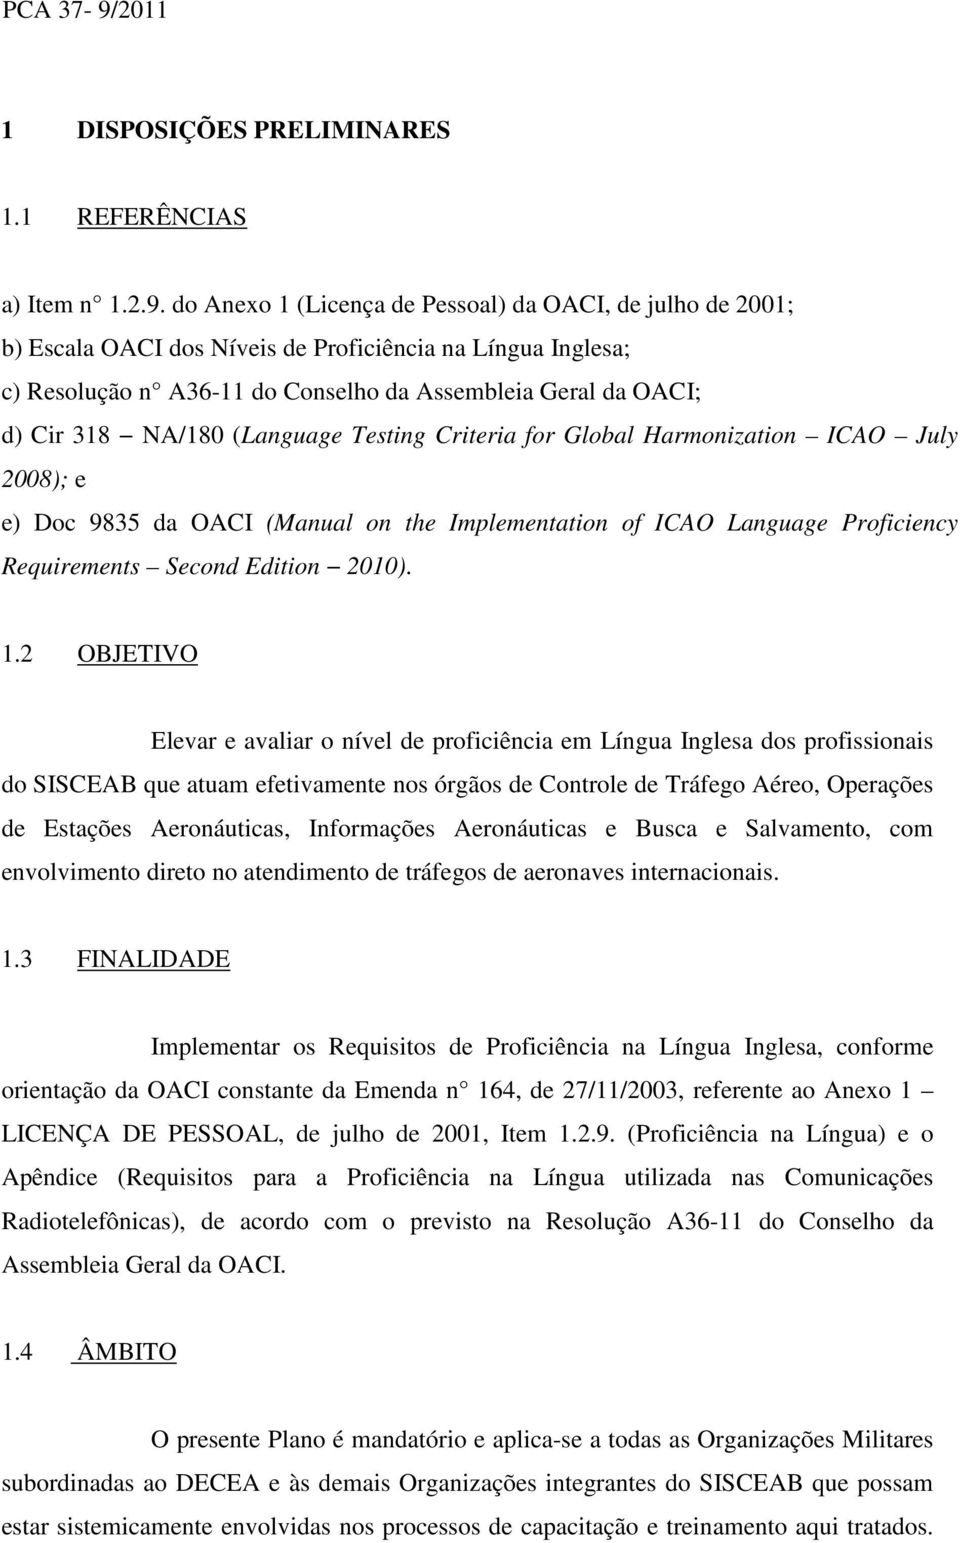 do Anexo 1 (Licença de Pessoal) da OACI, de julho de 2001; b) Escala OACI dos Níveis de Proficiência na Língua Inglesa; c) Resolução n A36-11 do Conselho da Assembleia Geral da OACI; d) Cir 318